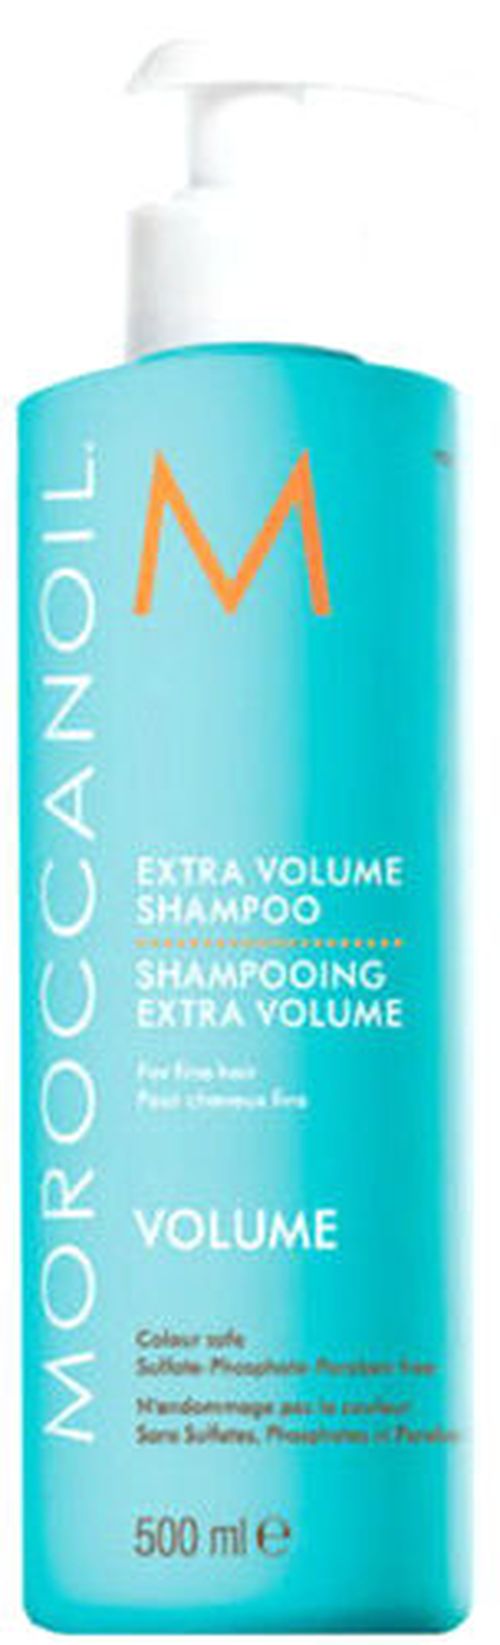 купить Шампунь Extra Volume Shampoo 500Ml в Кишинёве 